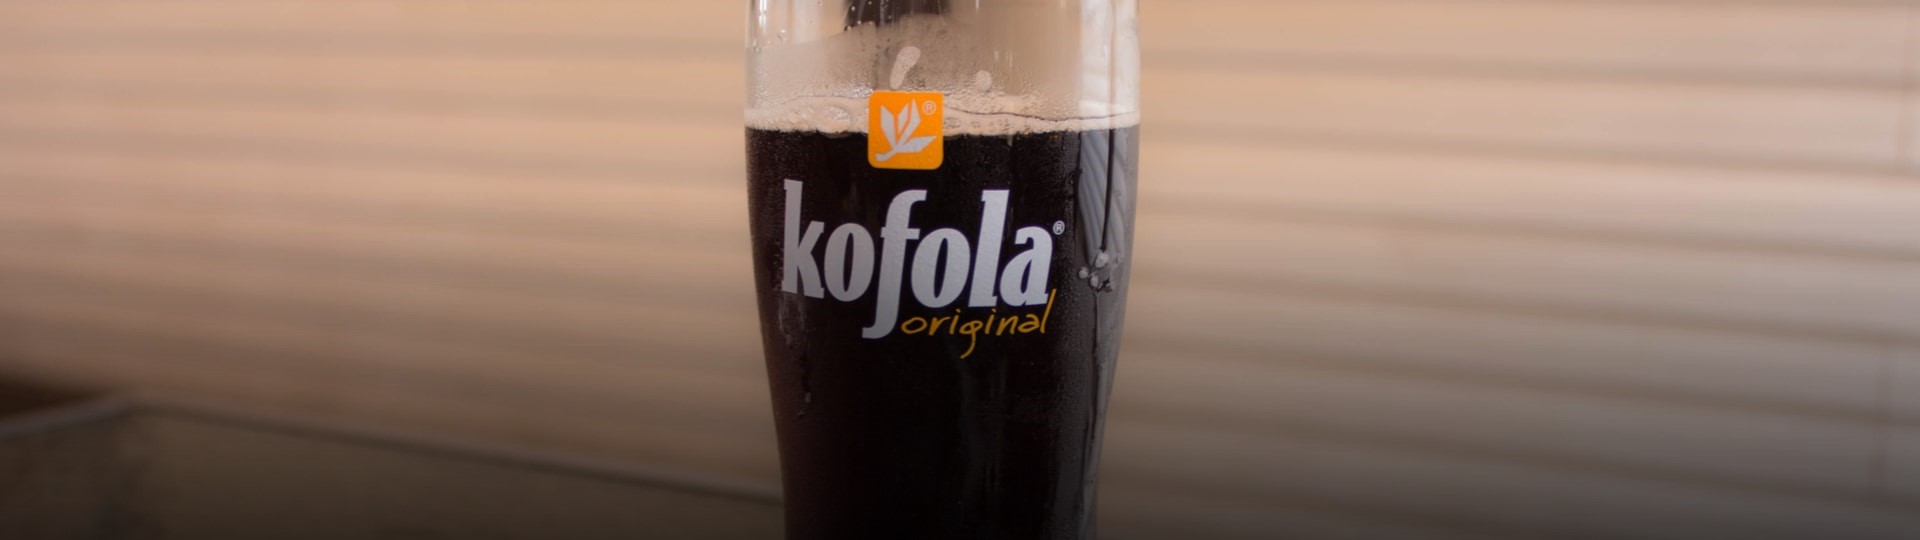 Výrobci nápojů Kofola kvůli covidovým omezením klesly tržby i provozní zisk